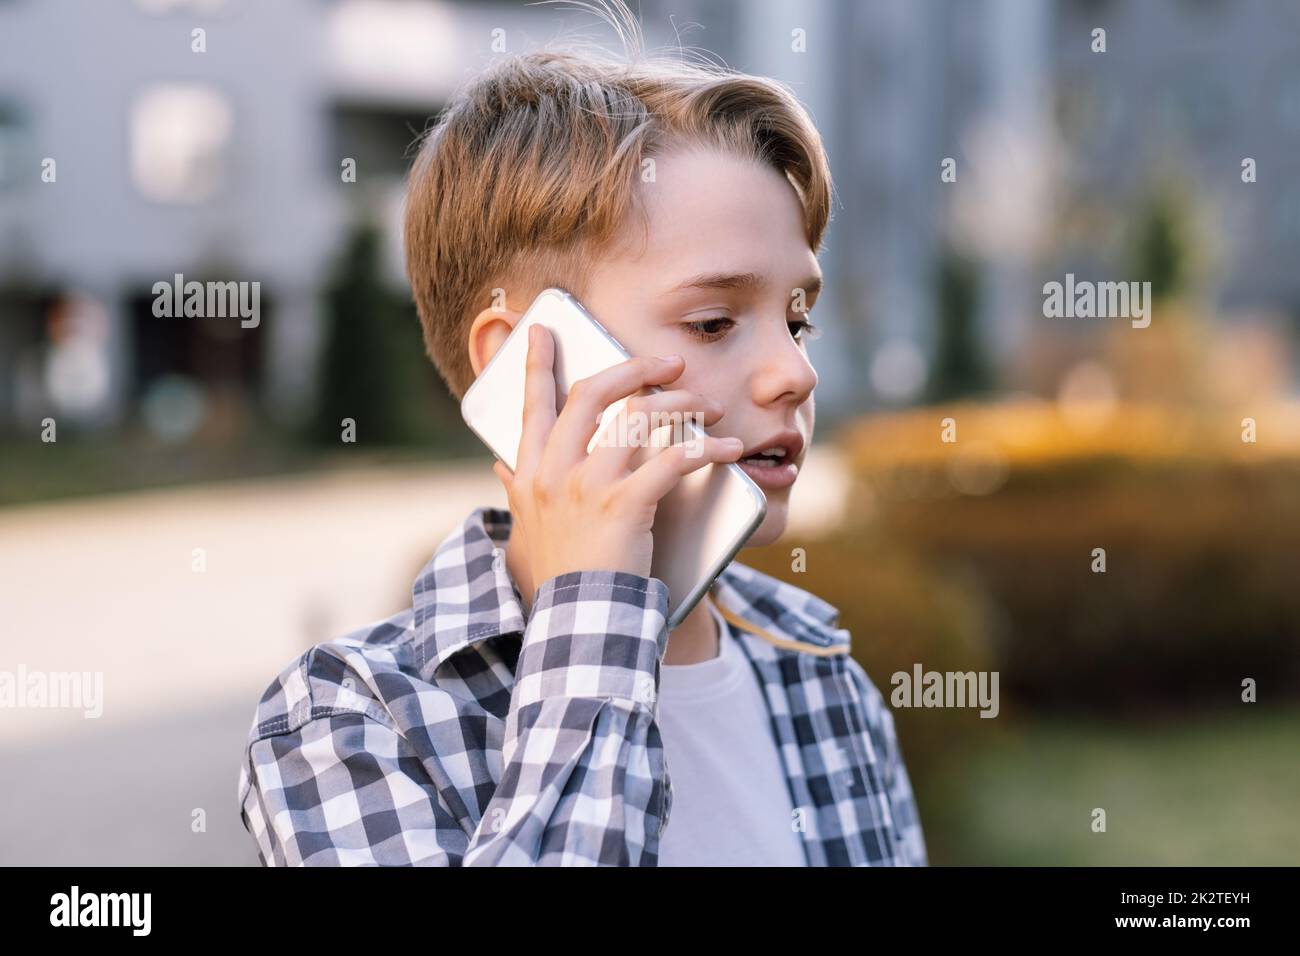 Nahaufnahme eines modernen Teenagers, der auf einem Smartphone spricht. Teenager-Leben in der Stadt Stockfoto